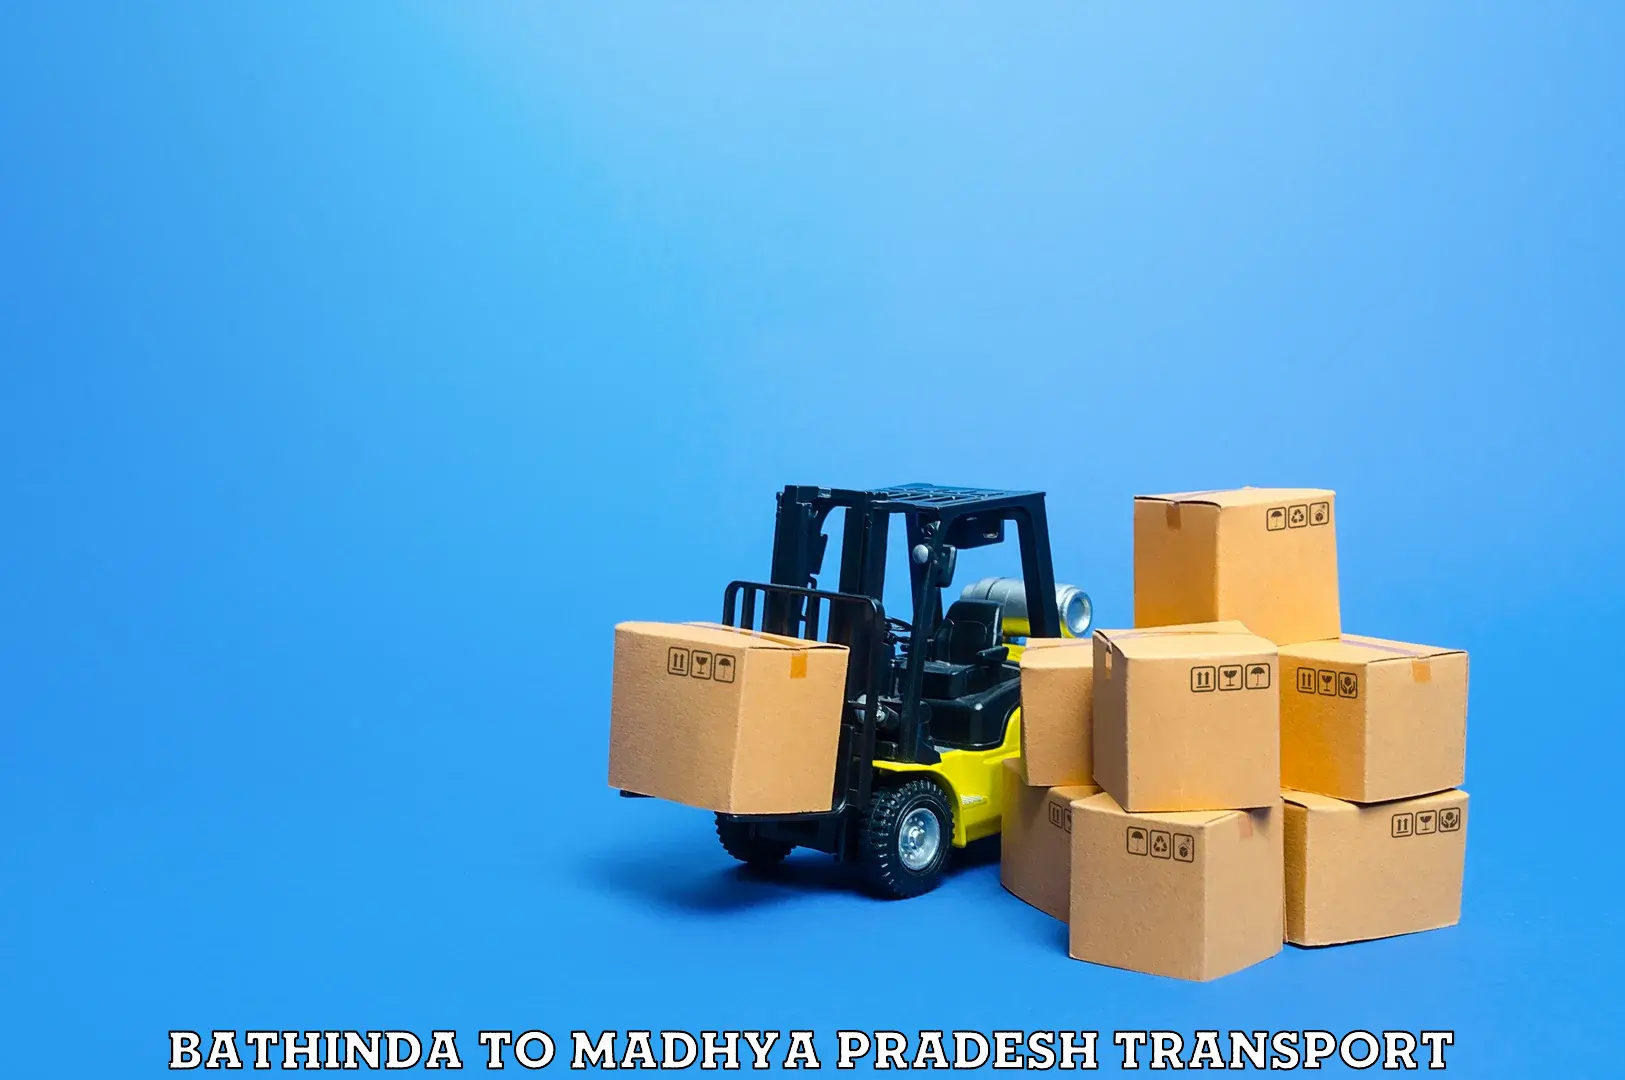 Furniture transport service Bathinda to Chhindwara